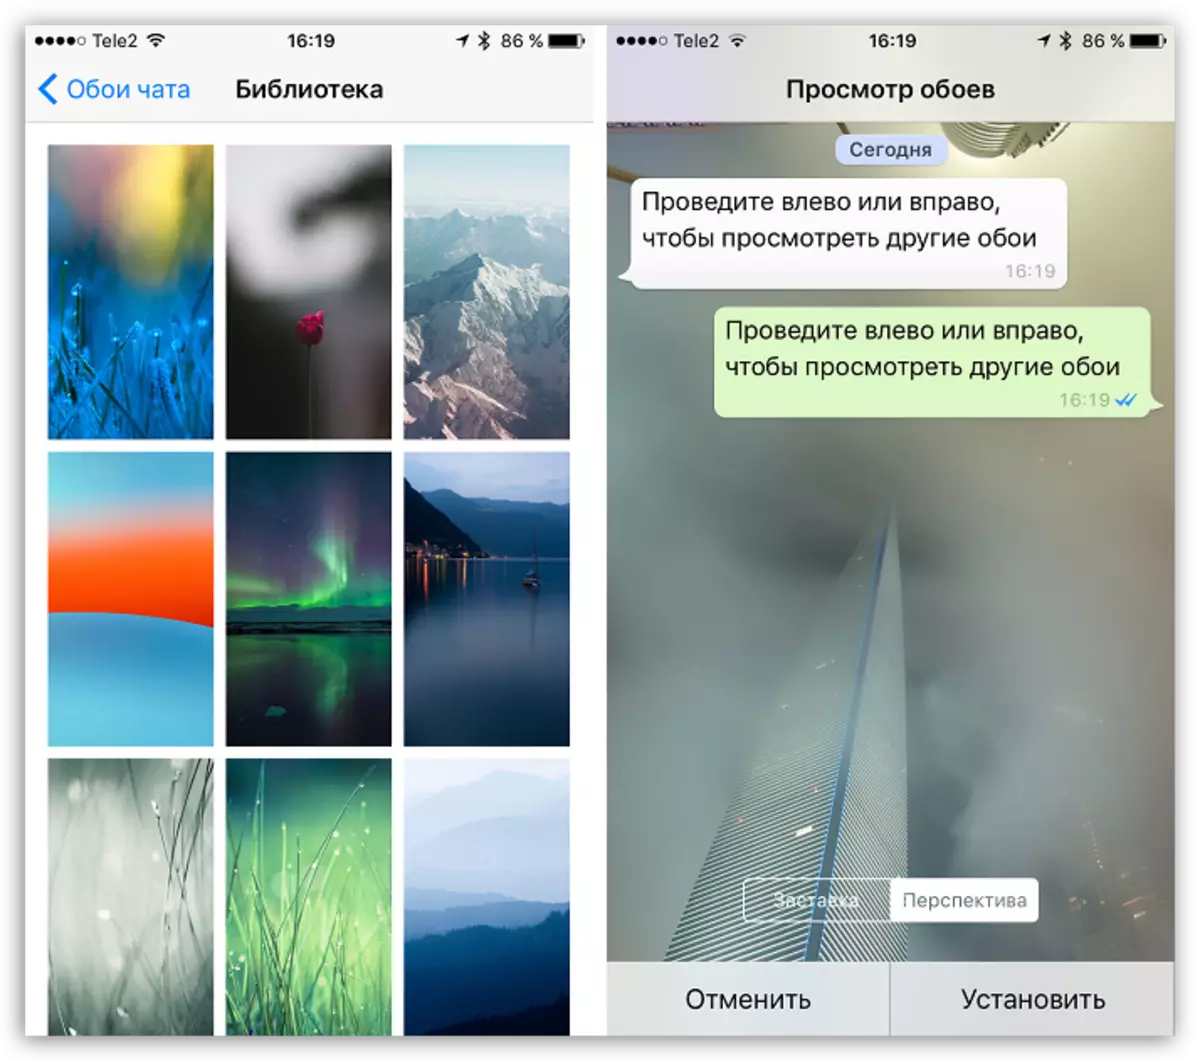 Wallpaper Kanggo Chats ing WhatsApp kanggo iOS